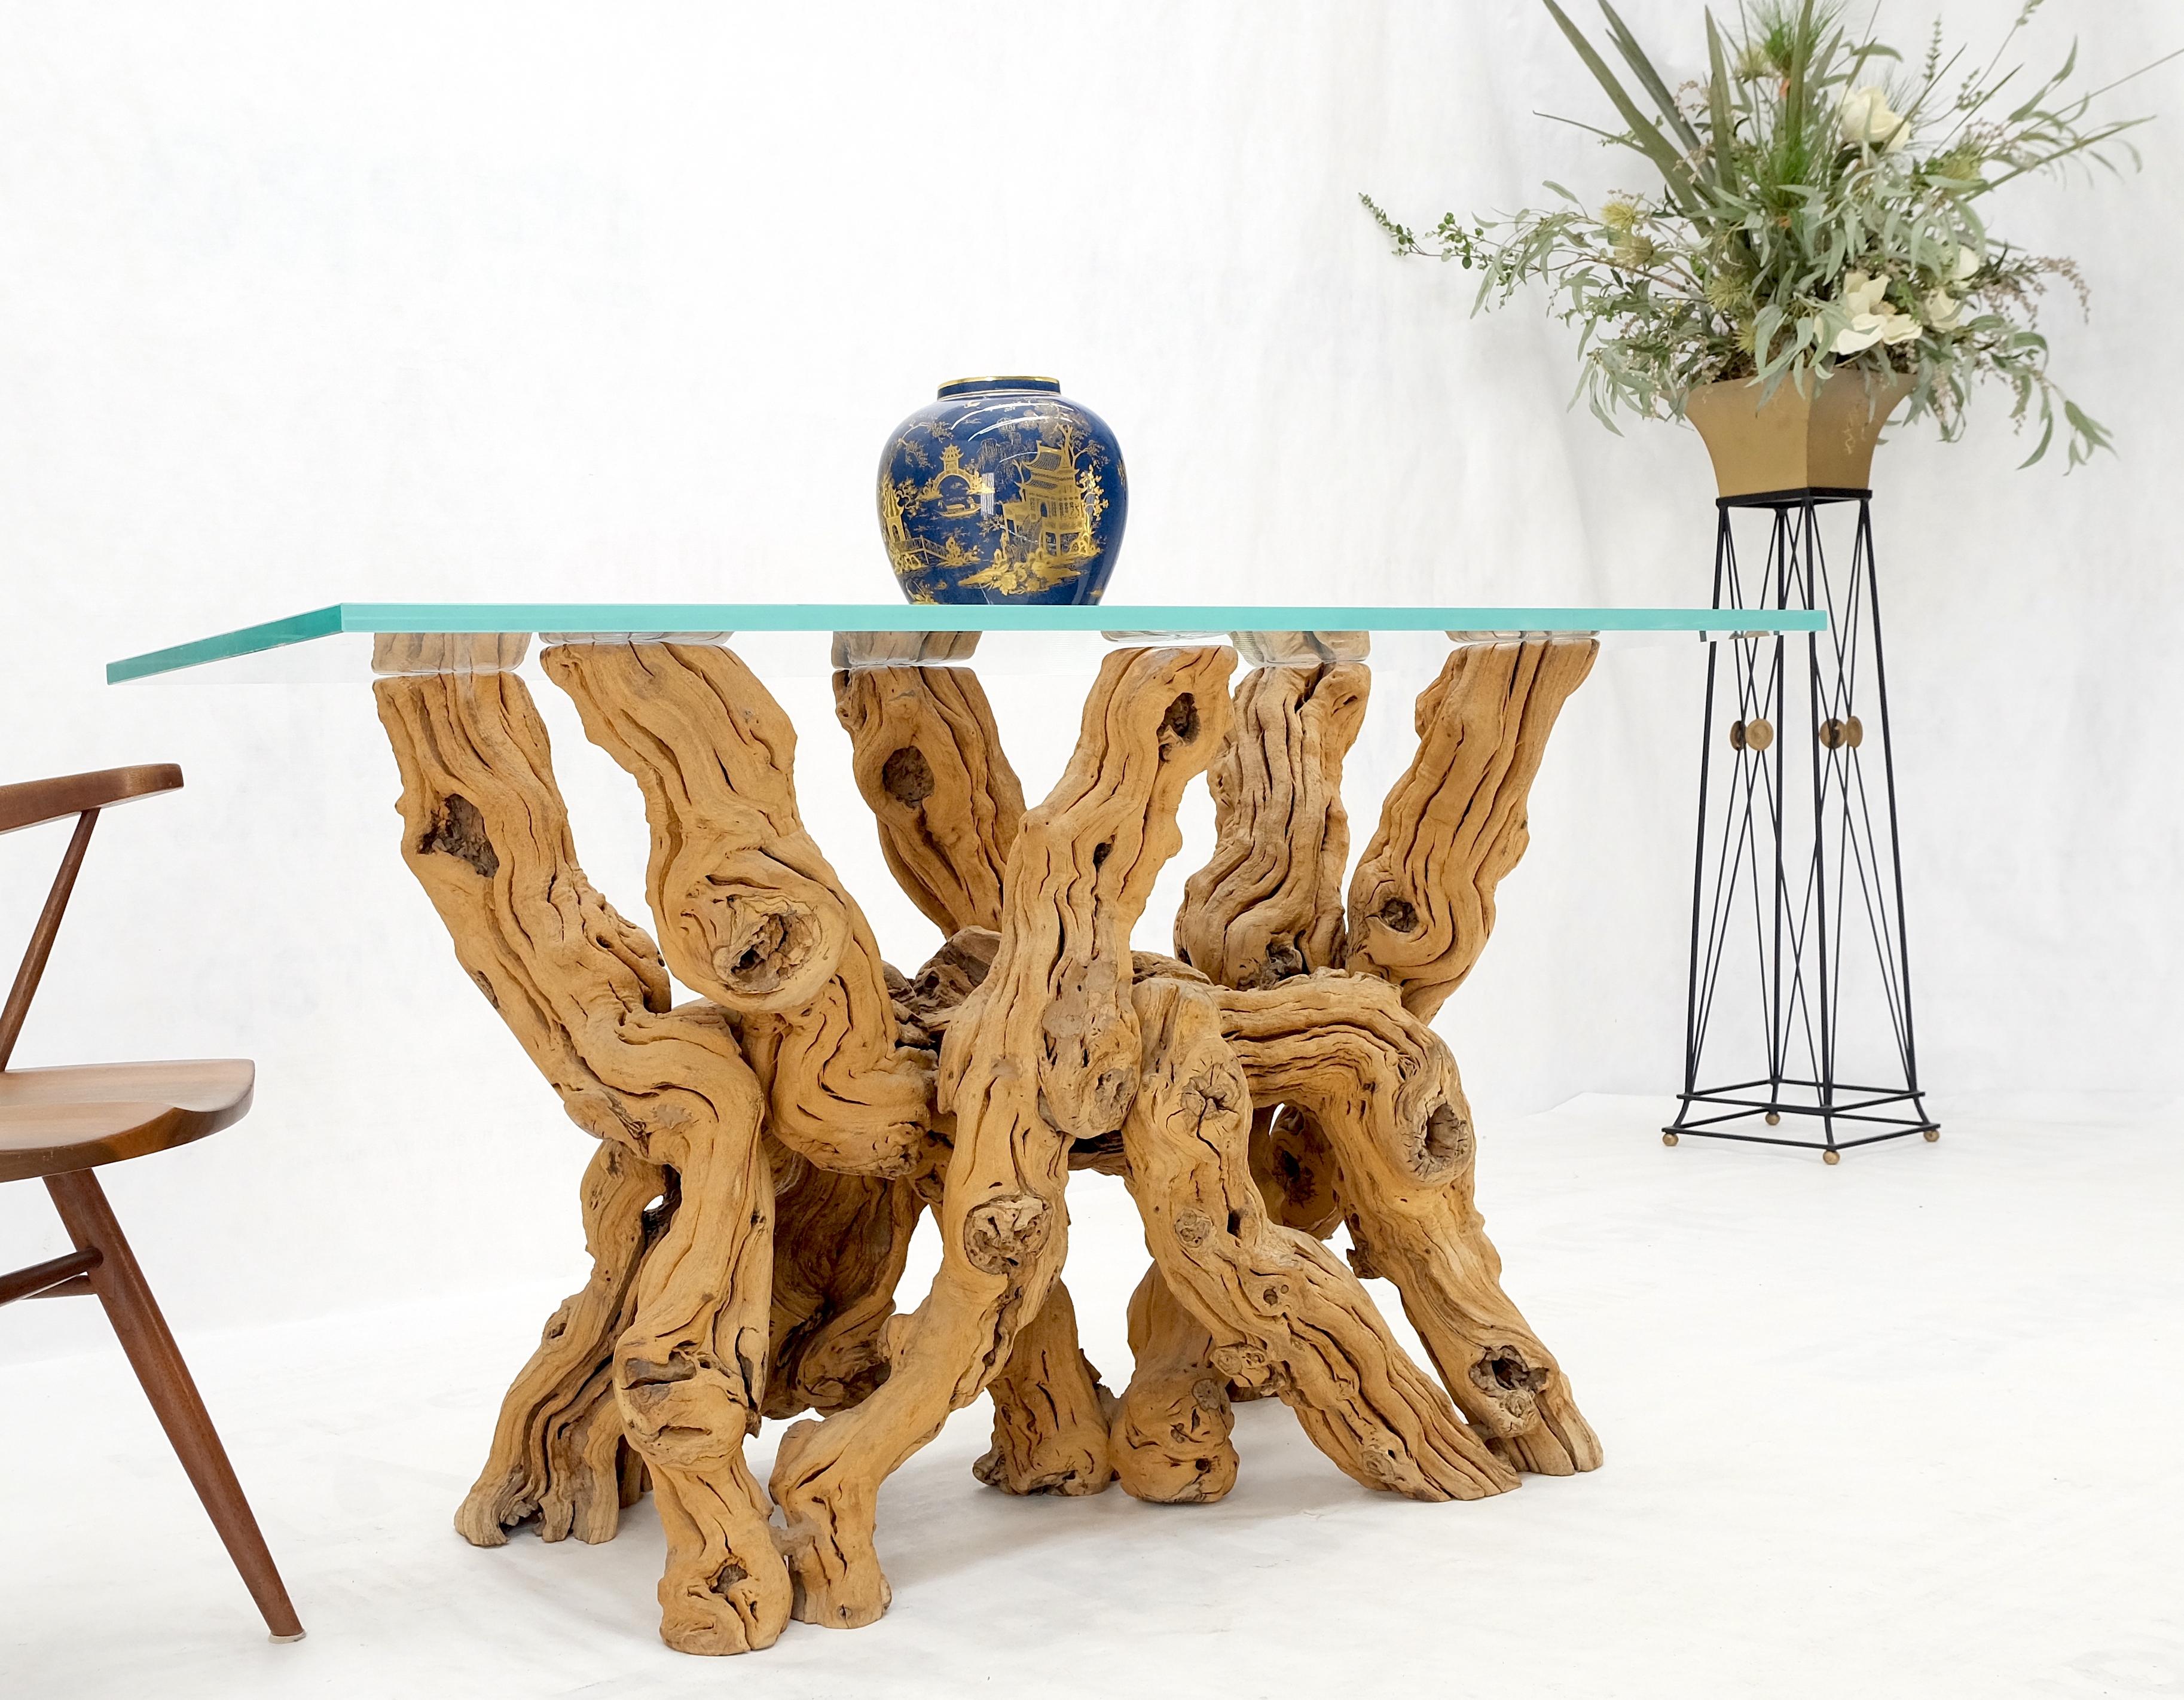 Grand bois flotté verni à base organique rectangulaire  Table console en verre MINT !
Le verre mesure 3/4'' d'épaisseur.